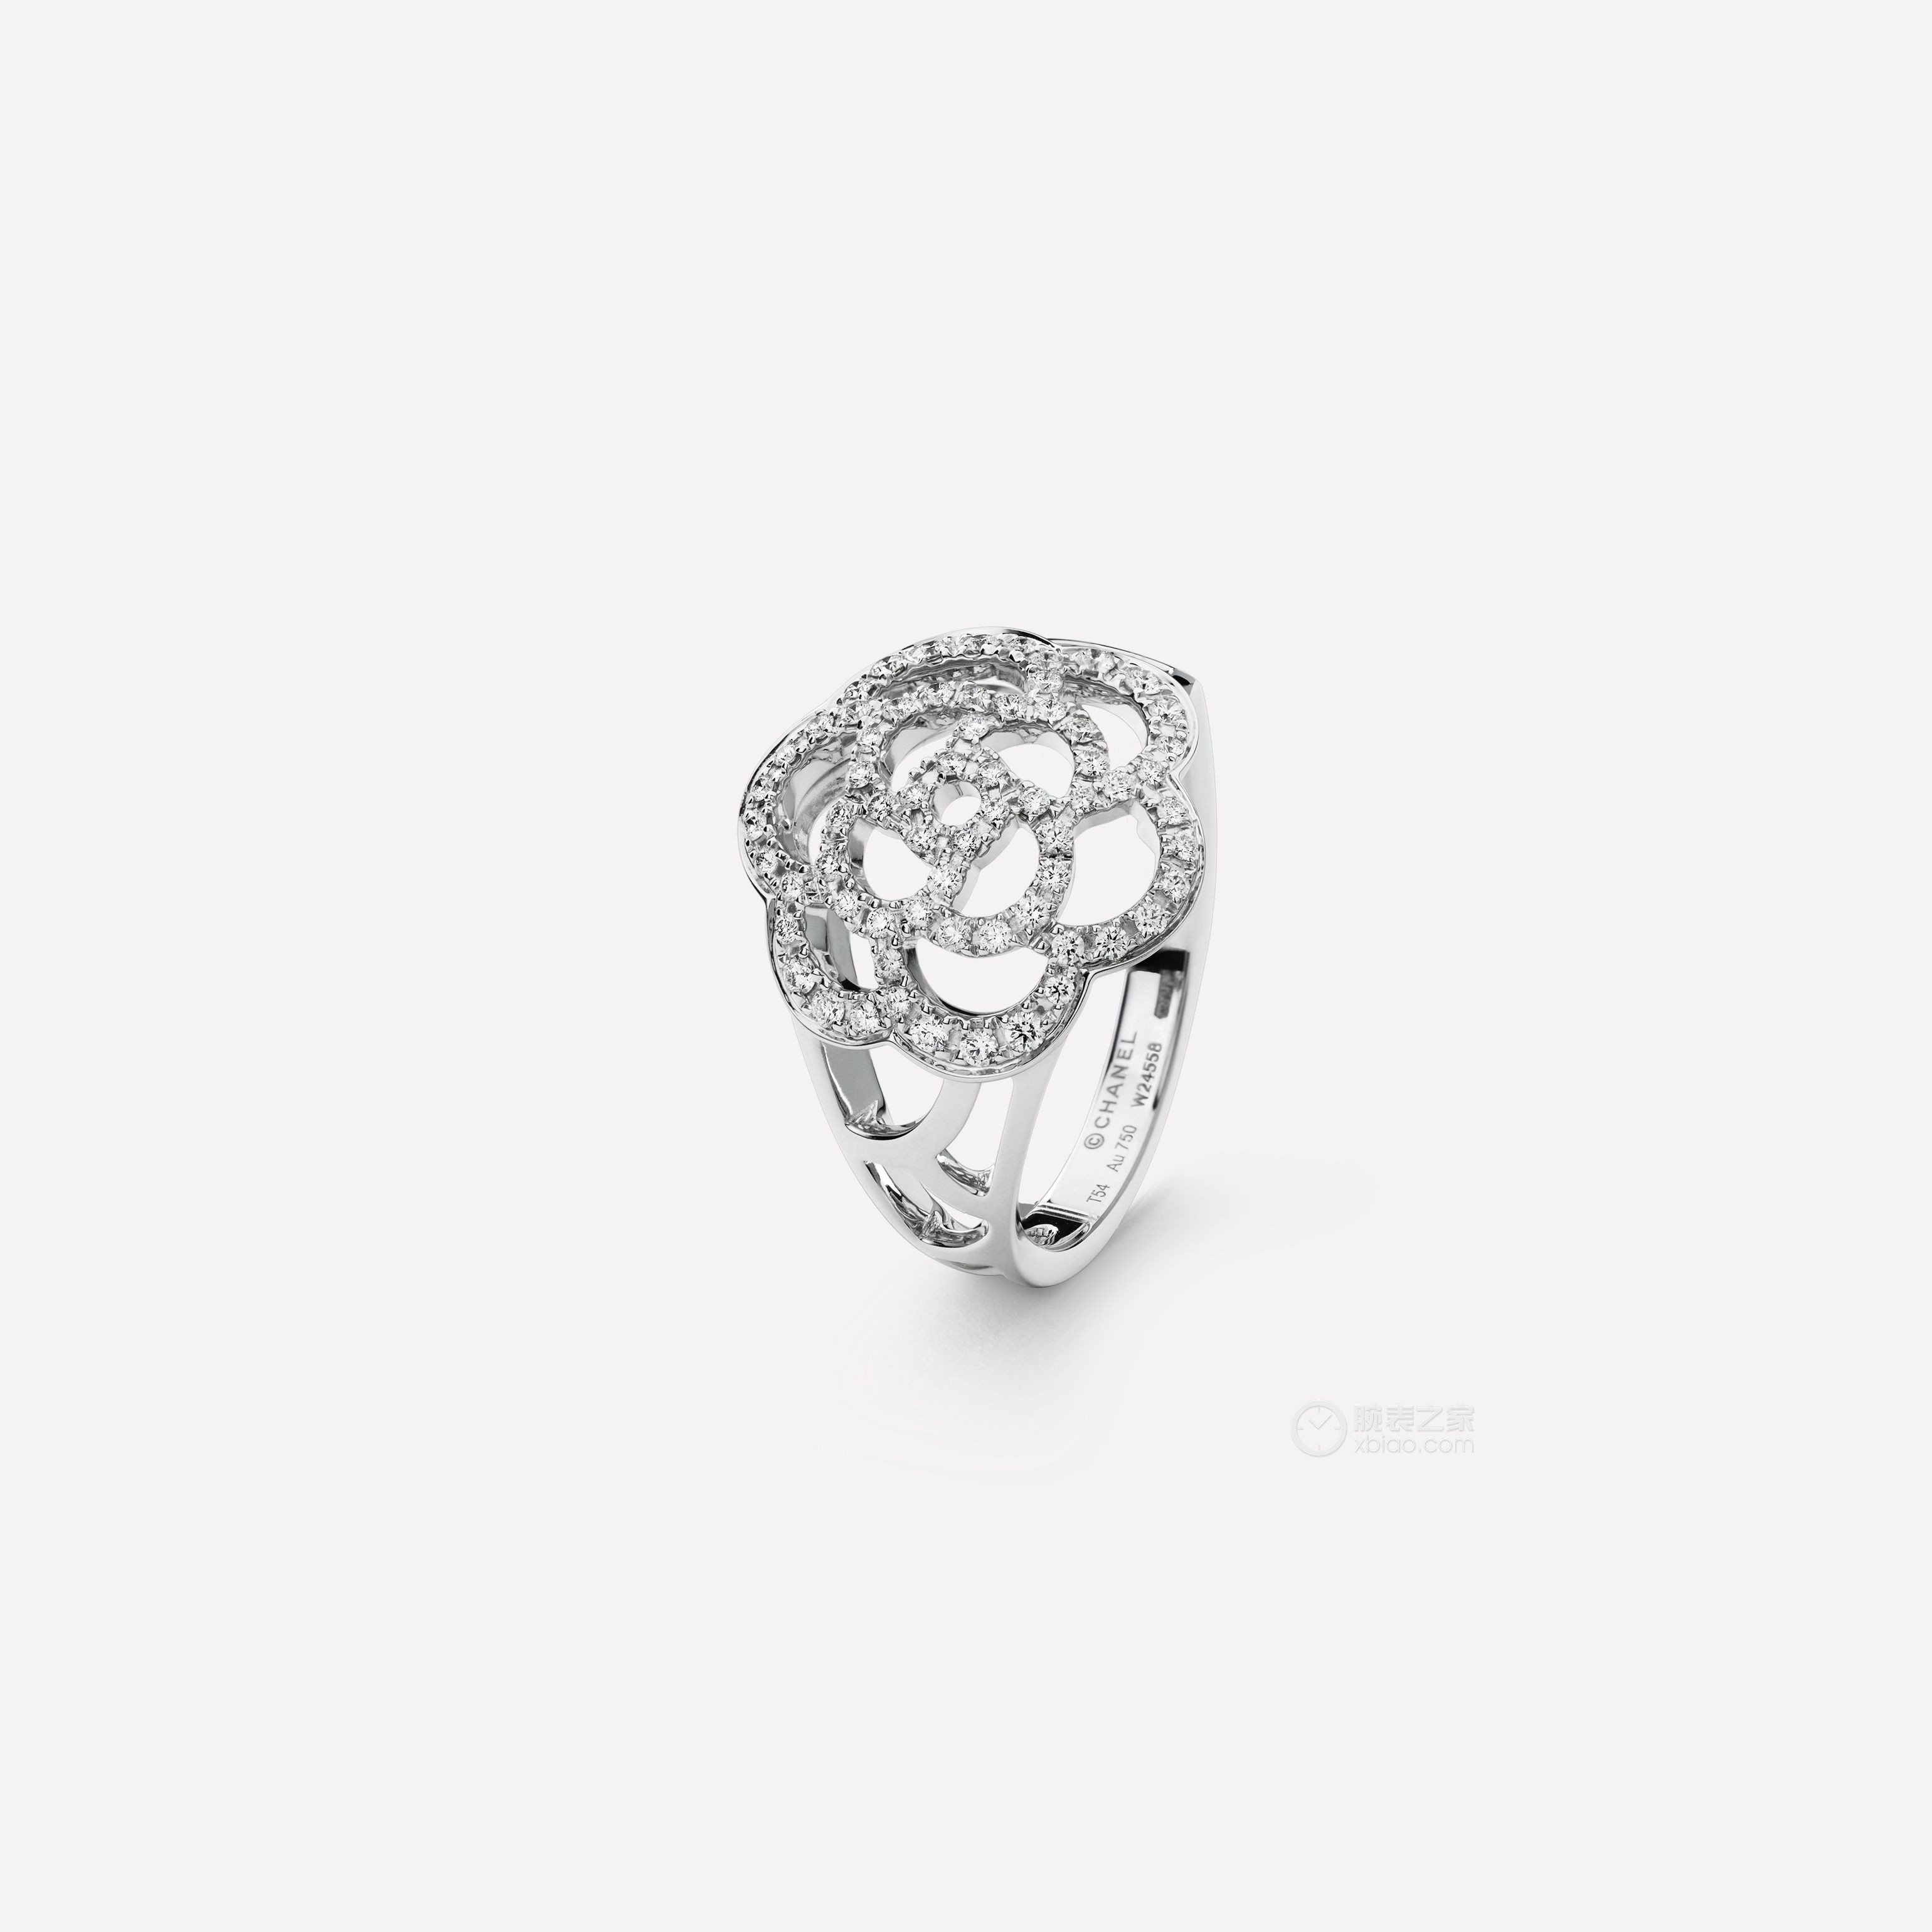 高清图|香奈儿COCO CRUSH系列J10864戒指图片2|腕表之家-珠宝